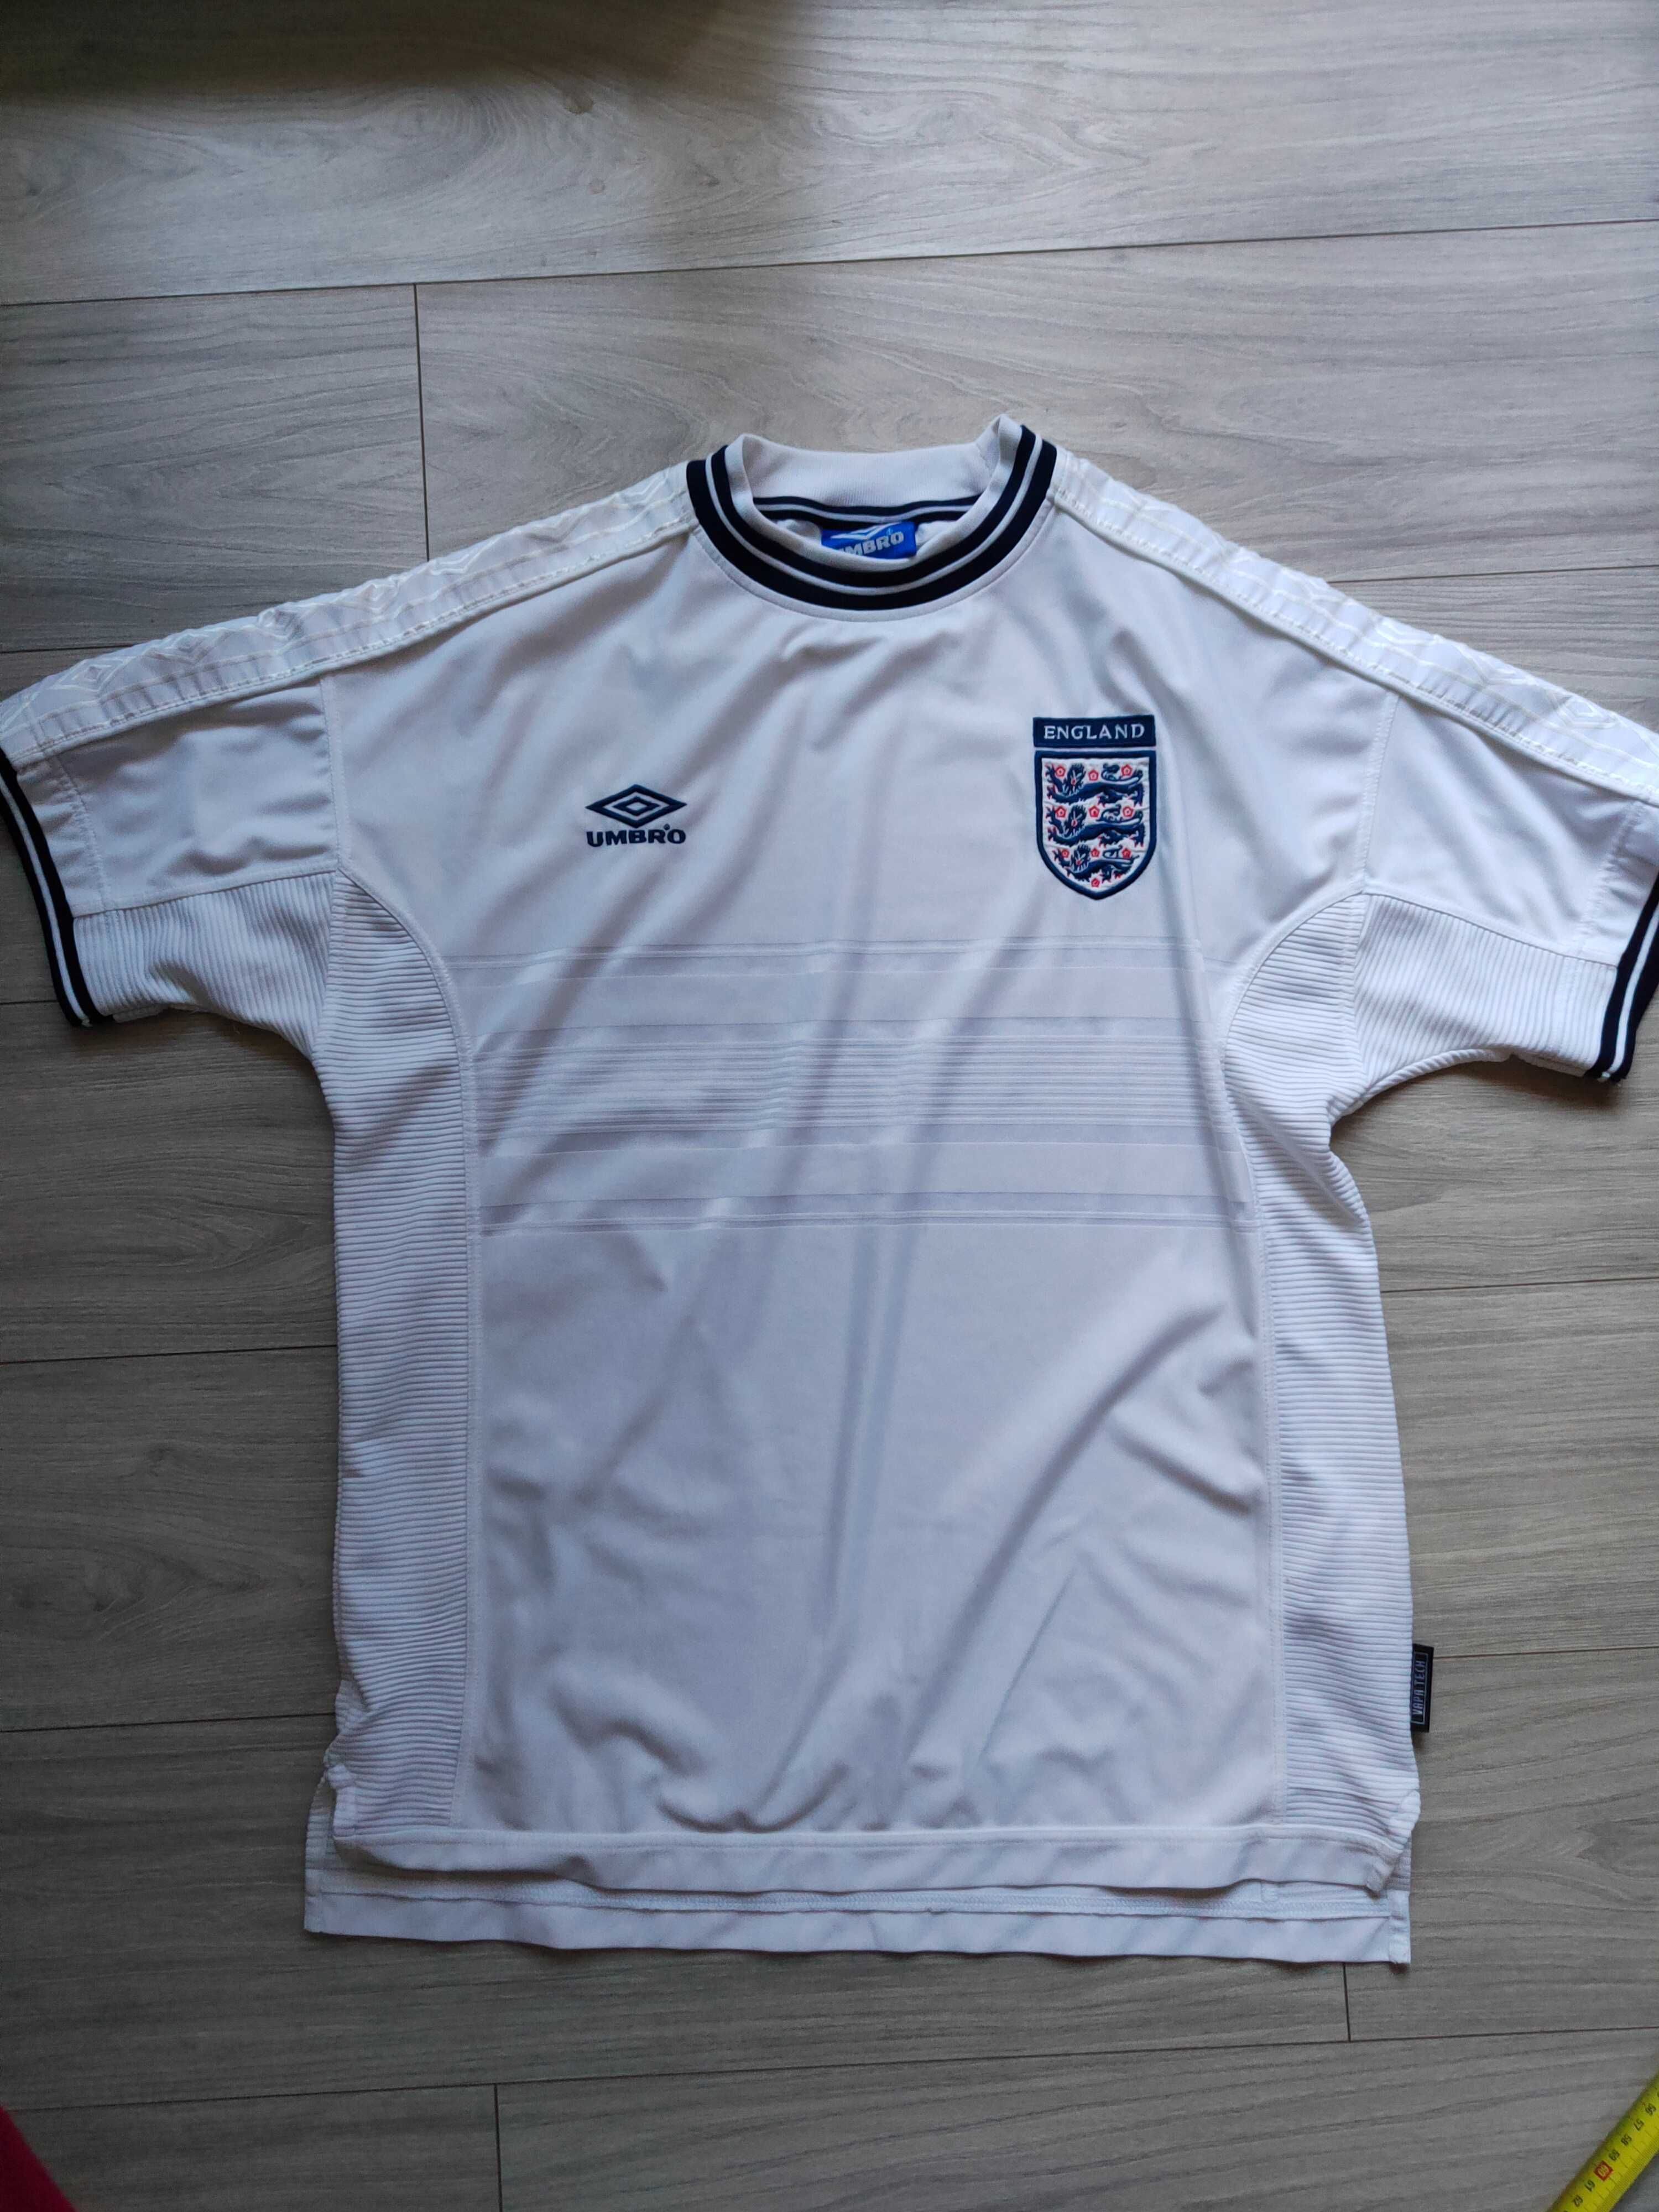 Umbro England koszulka męska XL